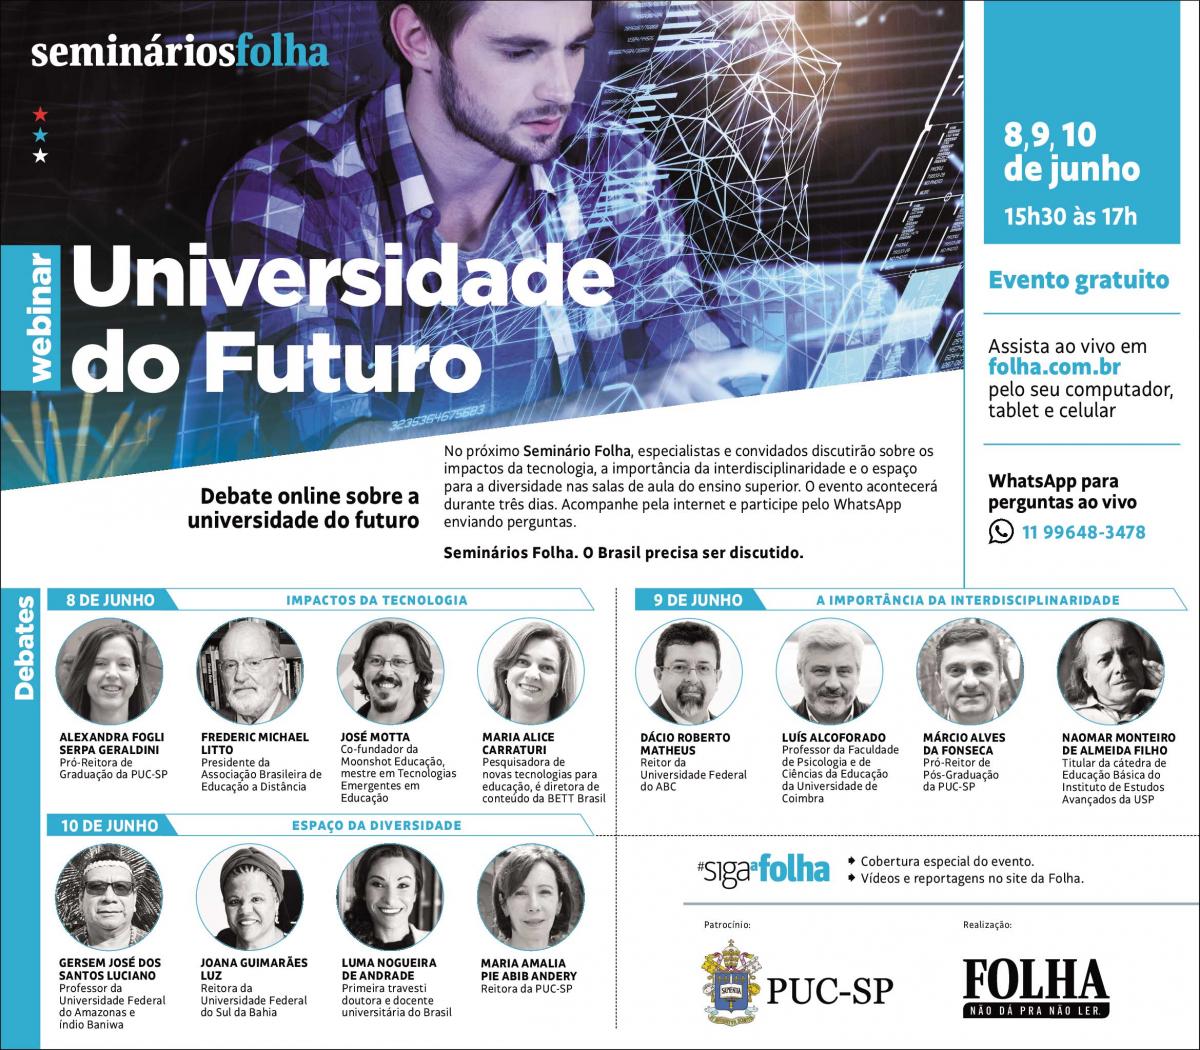 PUC-SP e Folha de S.Paulo debatem a universidade do futuro